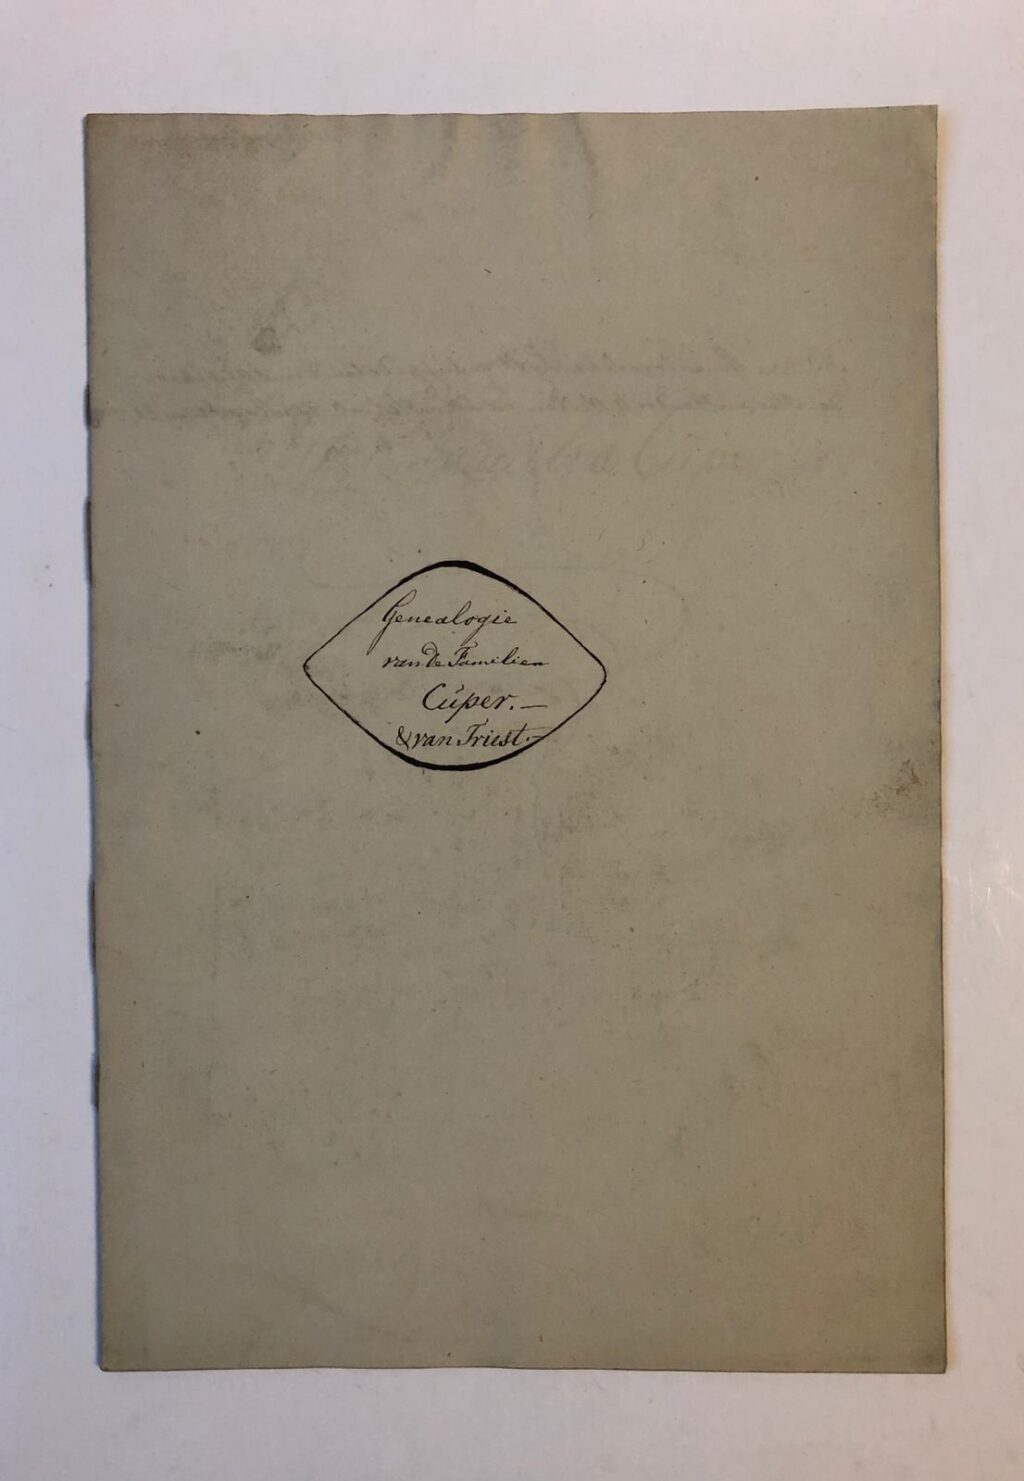 CUPER, VAN TRIEST “Genealogie van de familien Cuper & van Triest”, 10 p., folio, manuscript.